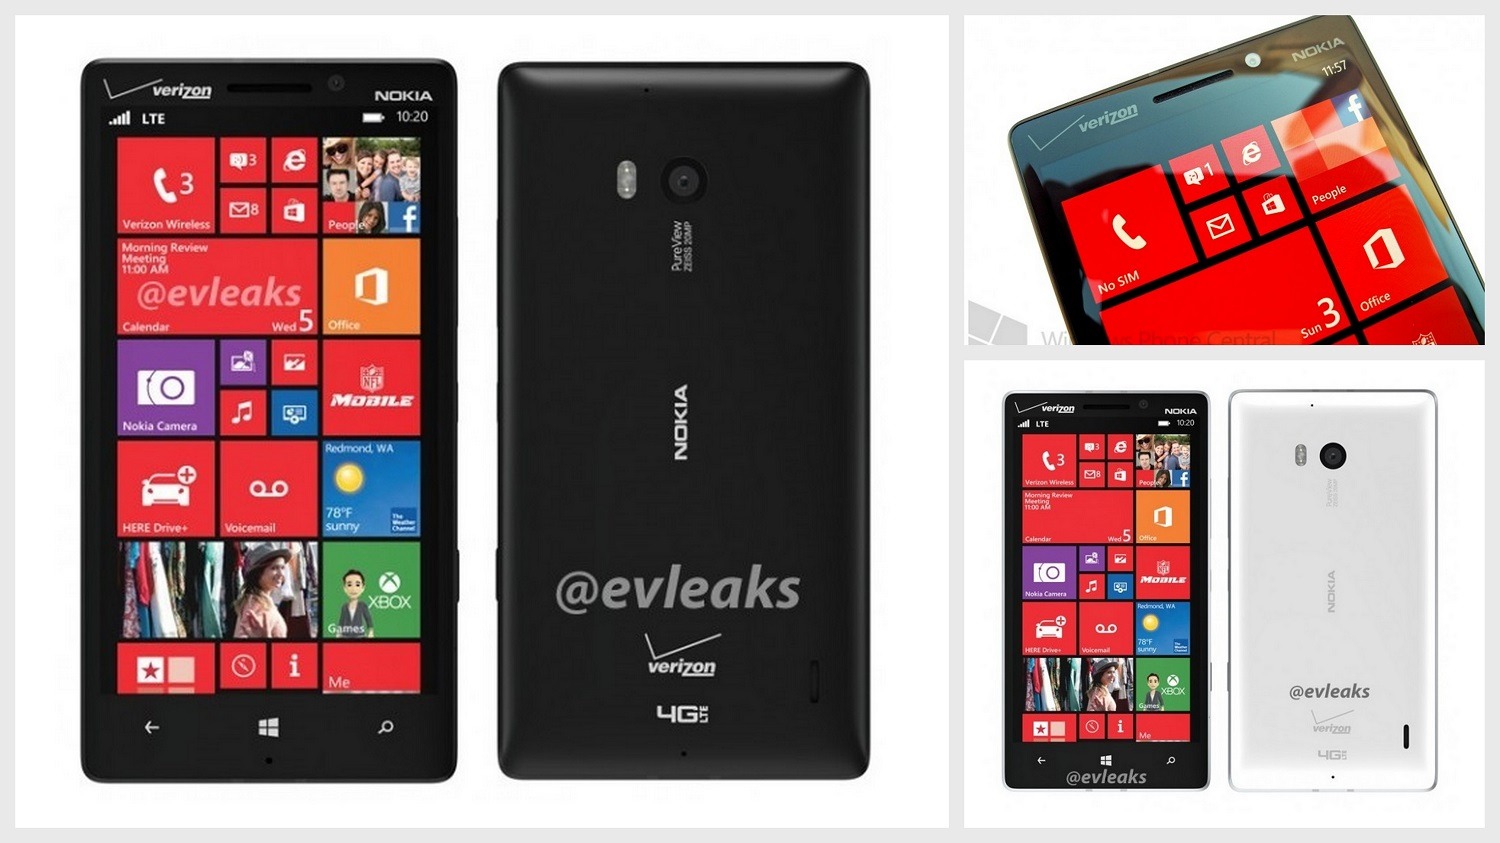 Upcoming smartphones Nokia lumia 929